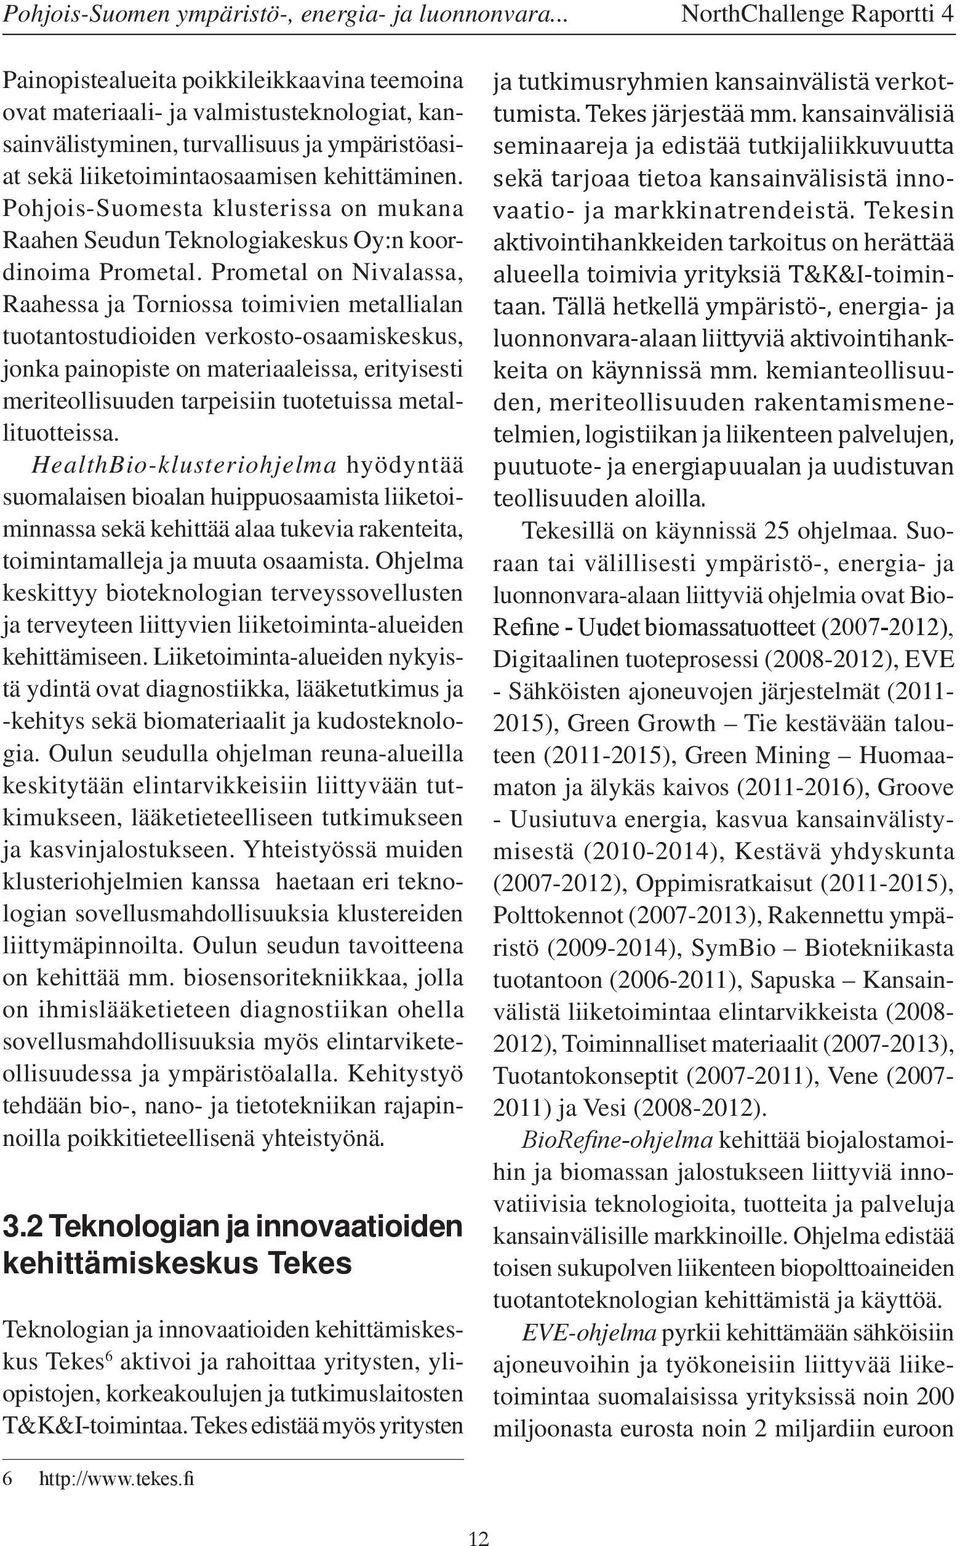 kehittäminen. Pohjois-Suomesta klusterissa on mukana Raahen Seudun Teknologiakeskus Oy:n koordinoima Prometal.